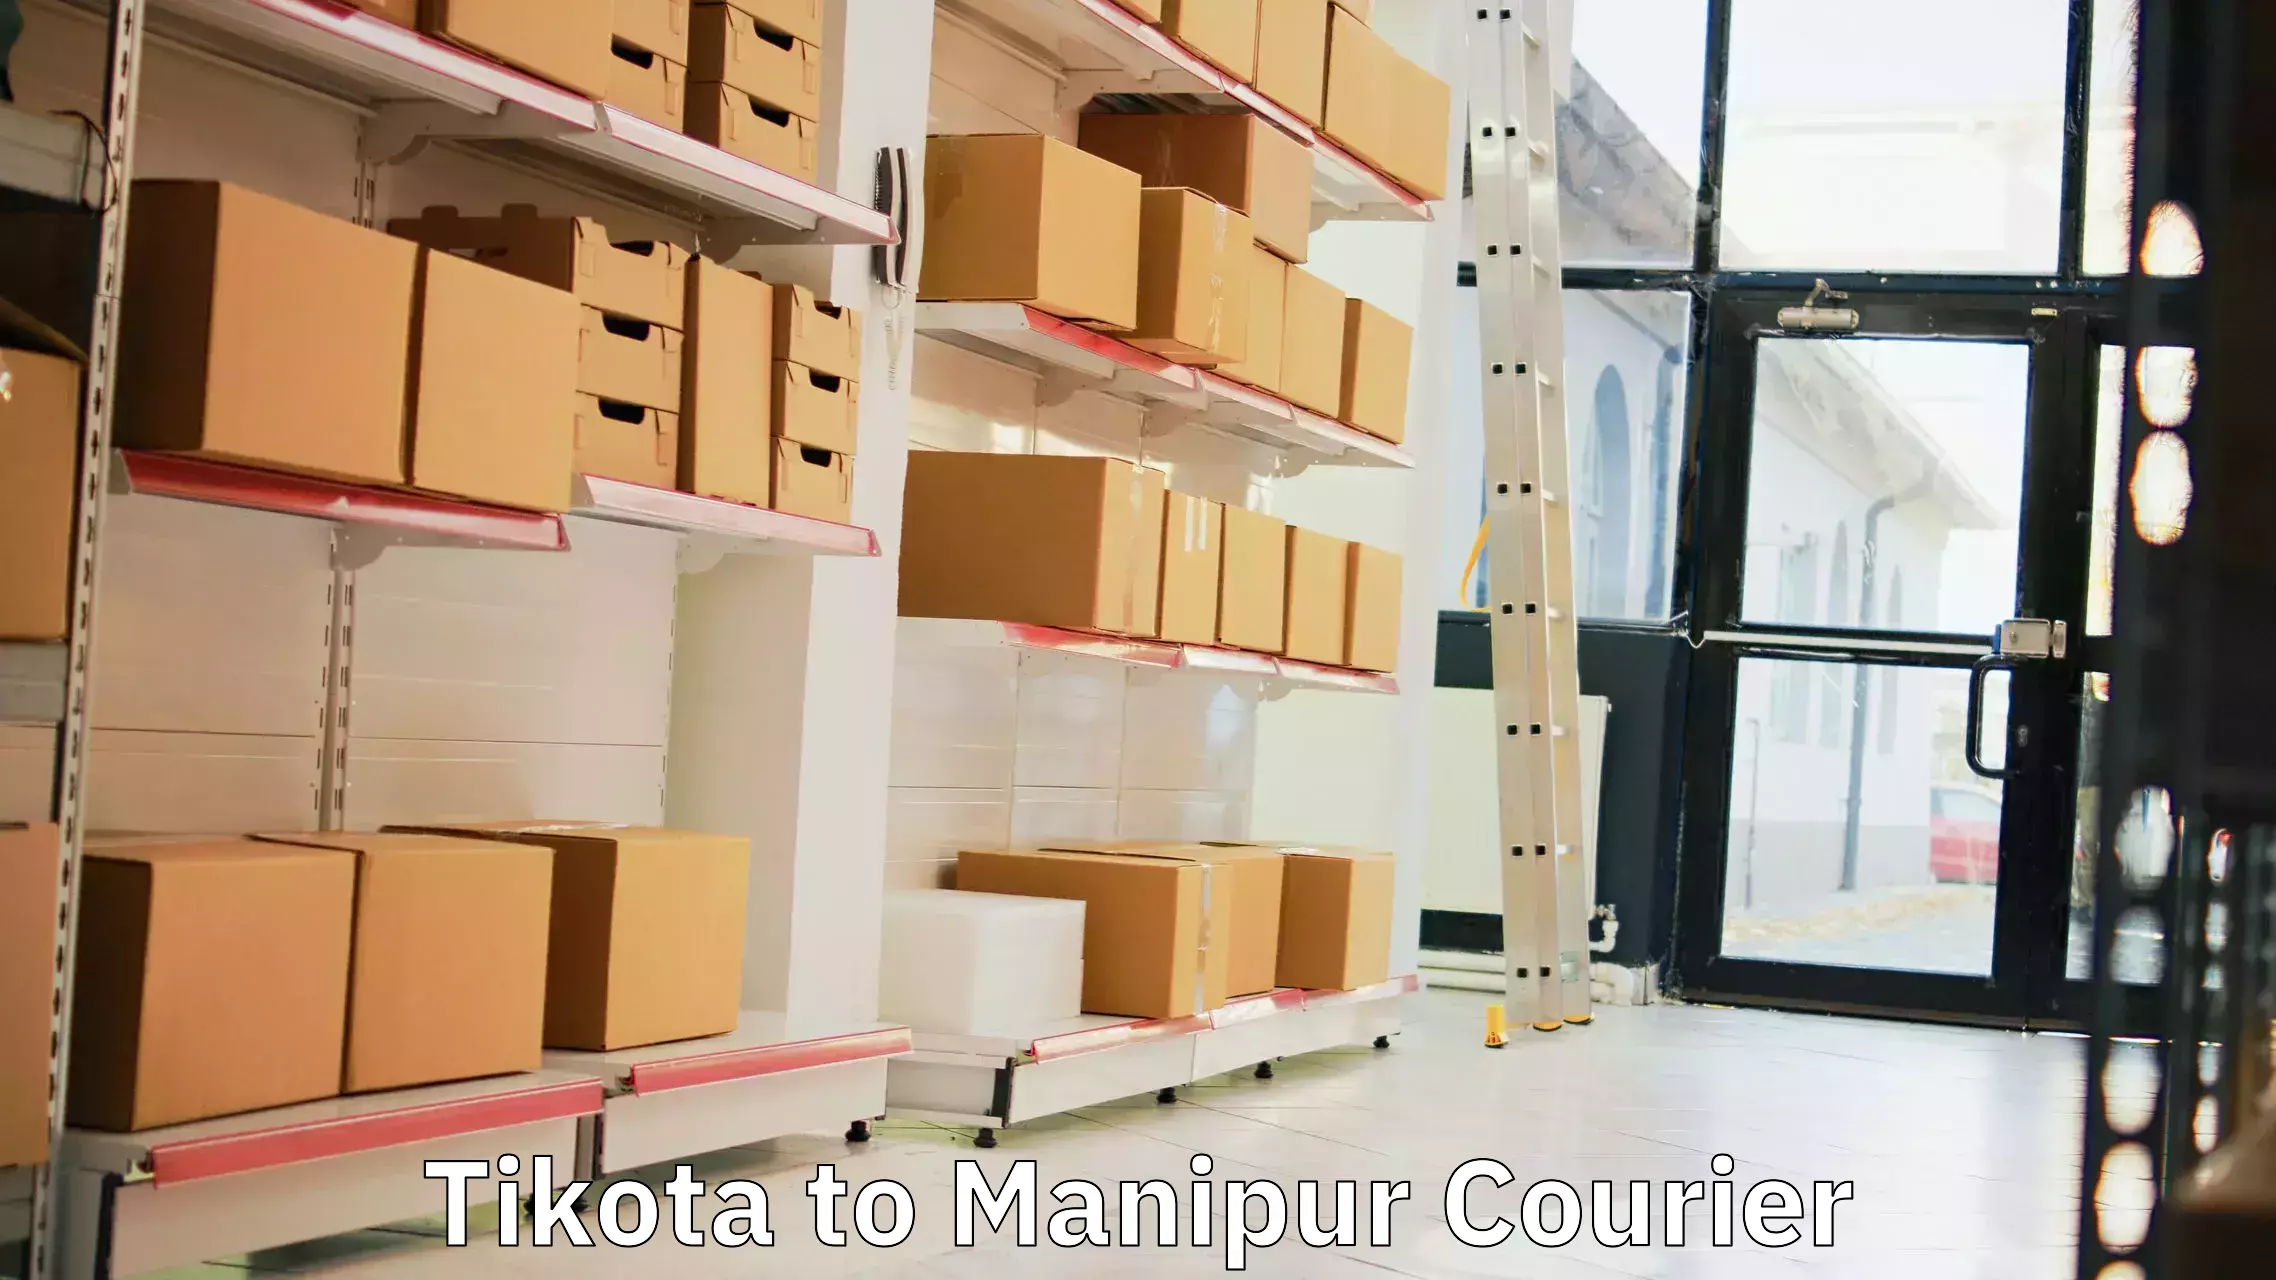 Courier service comparison Tikota to Imphal